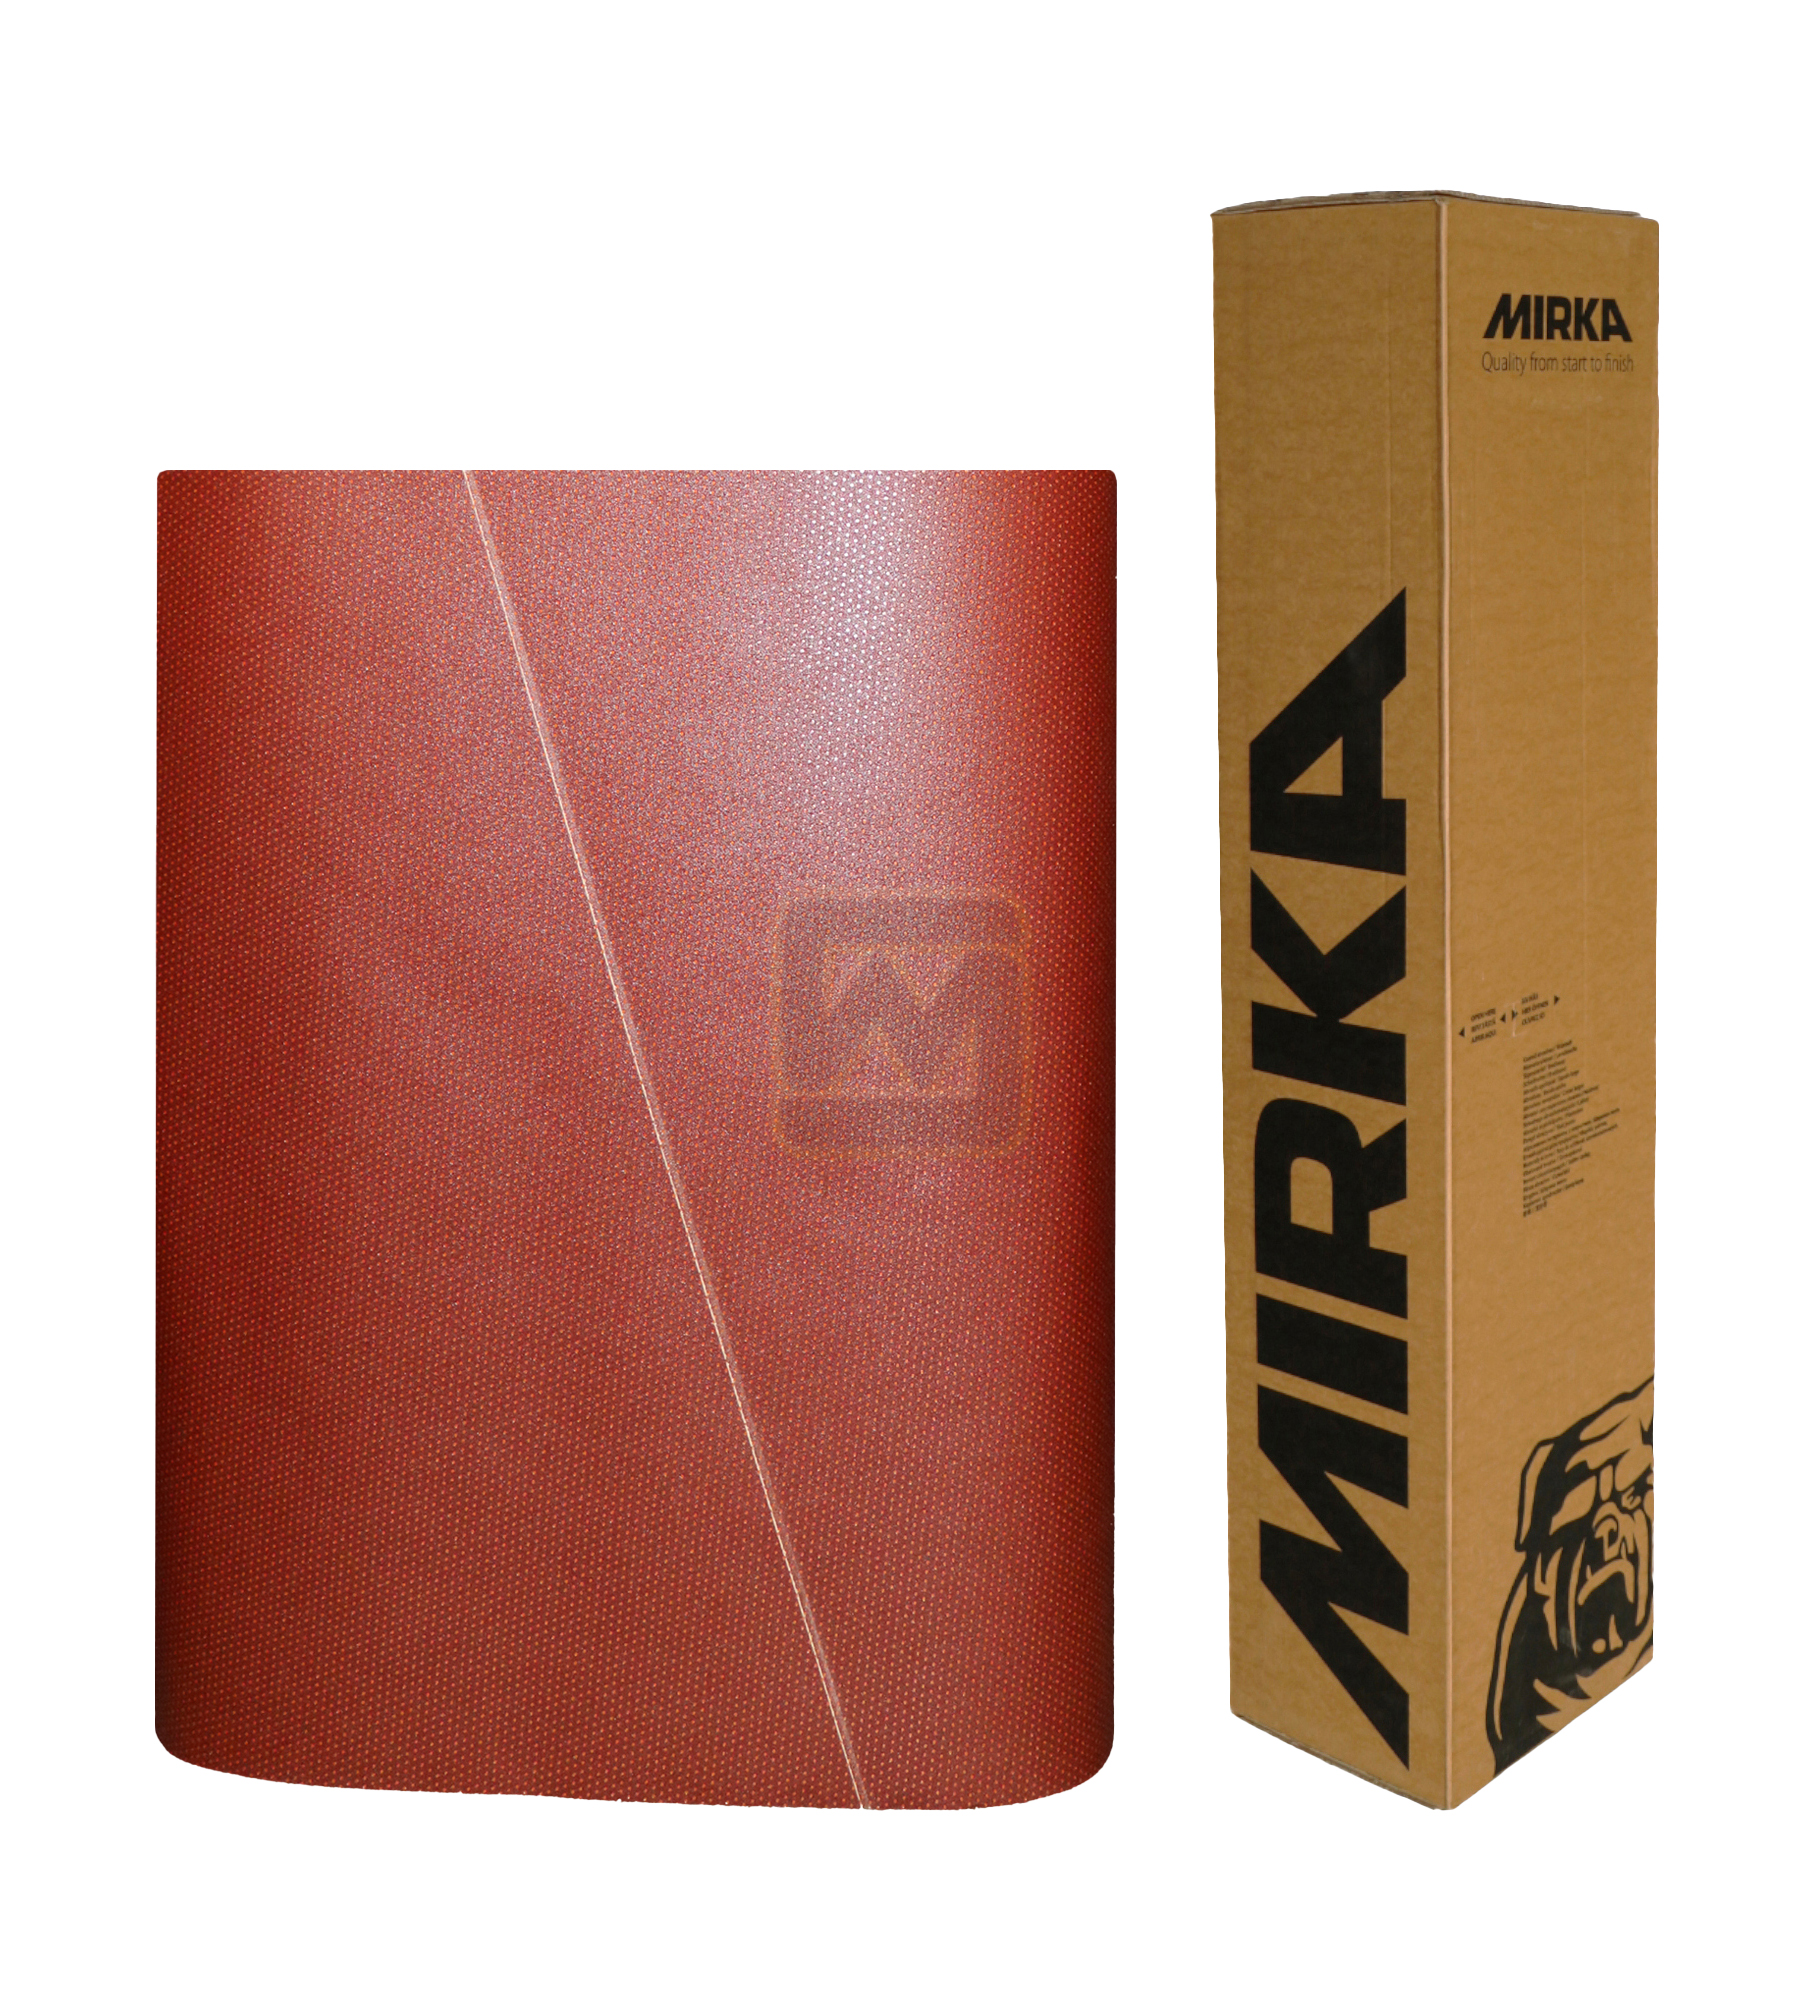 Abbildung Mirka Ultimax 1350x2620mm Breitband mit Verpackung.